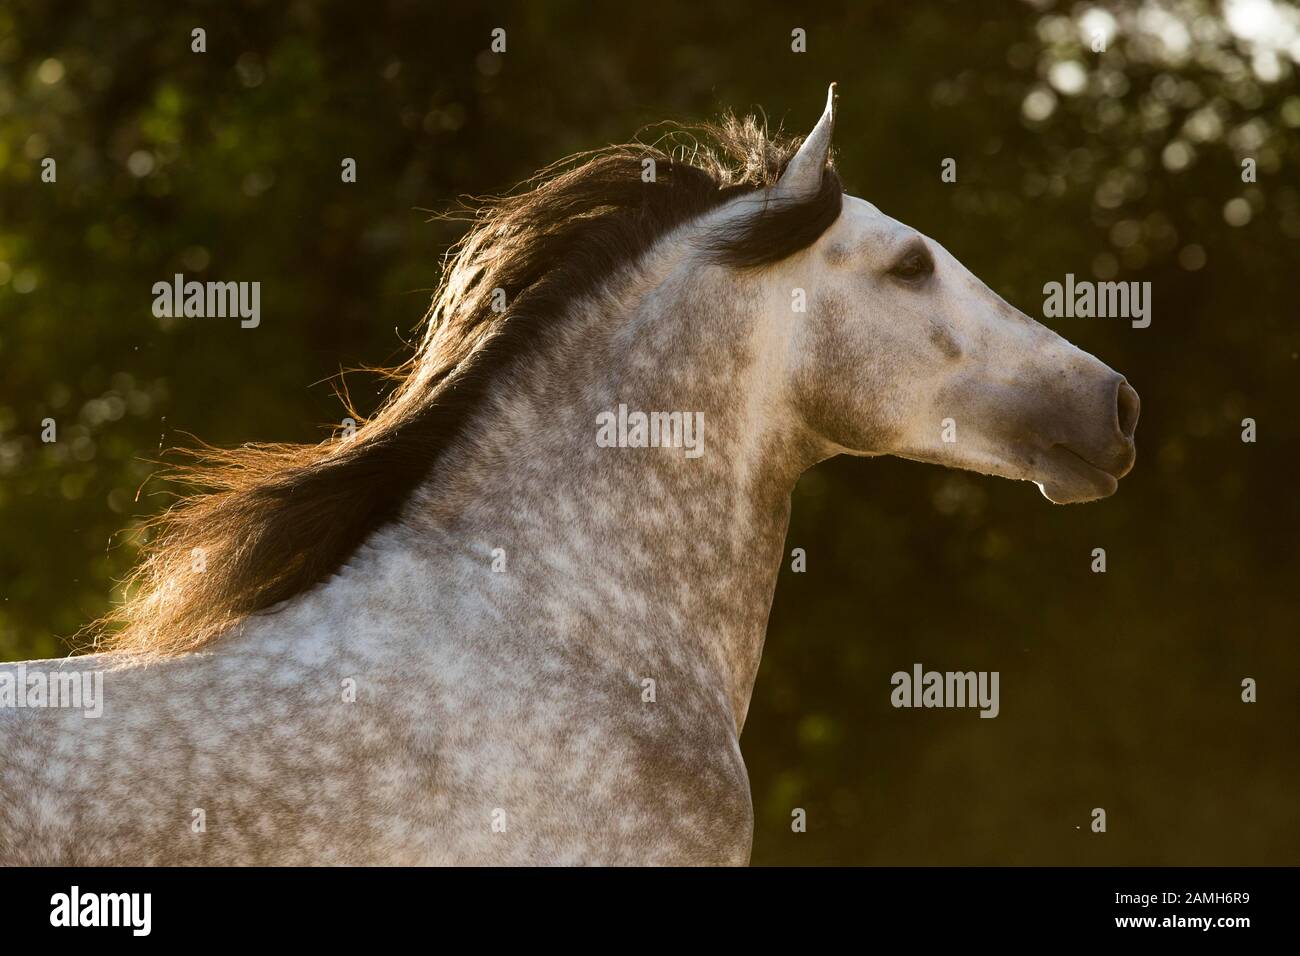 White Pura Raza Espanola Stallion, animal portrait, Andalusia, Spain Stock Photo